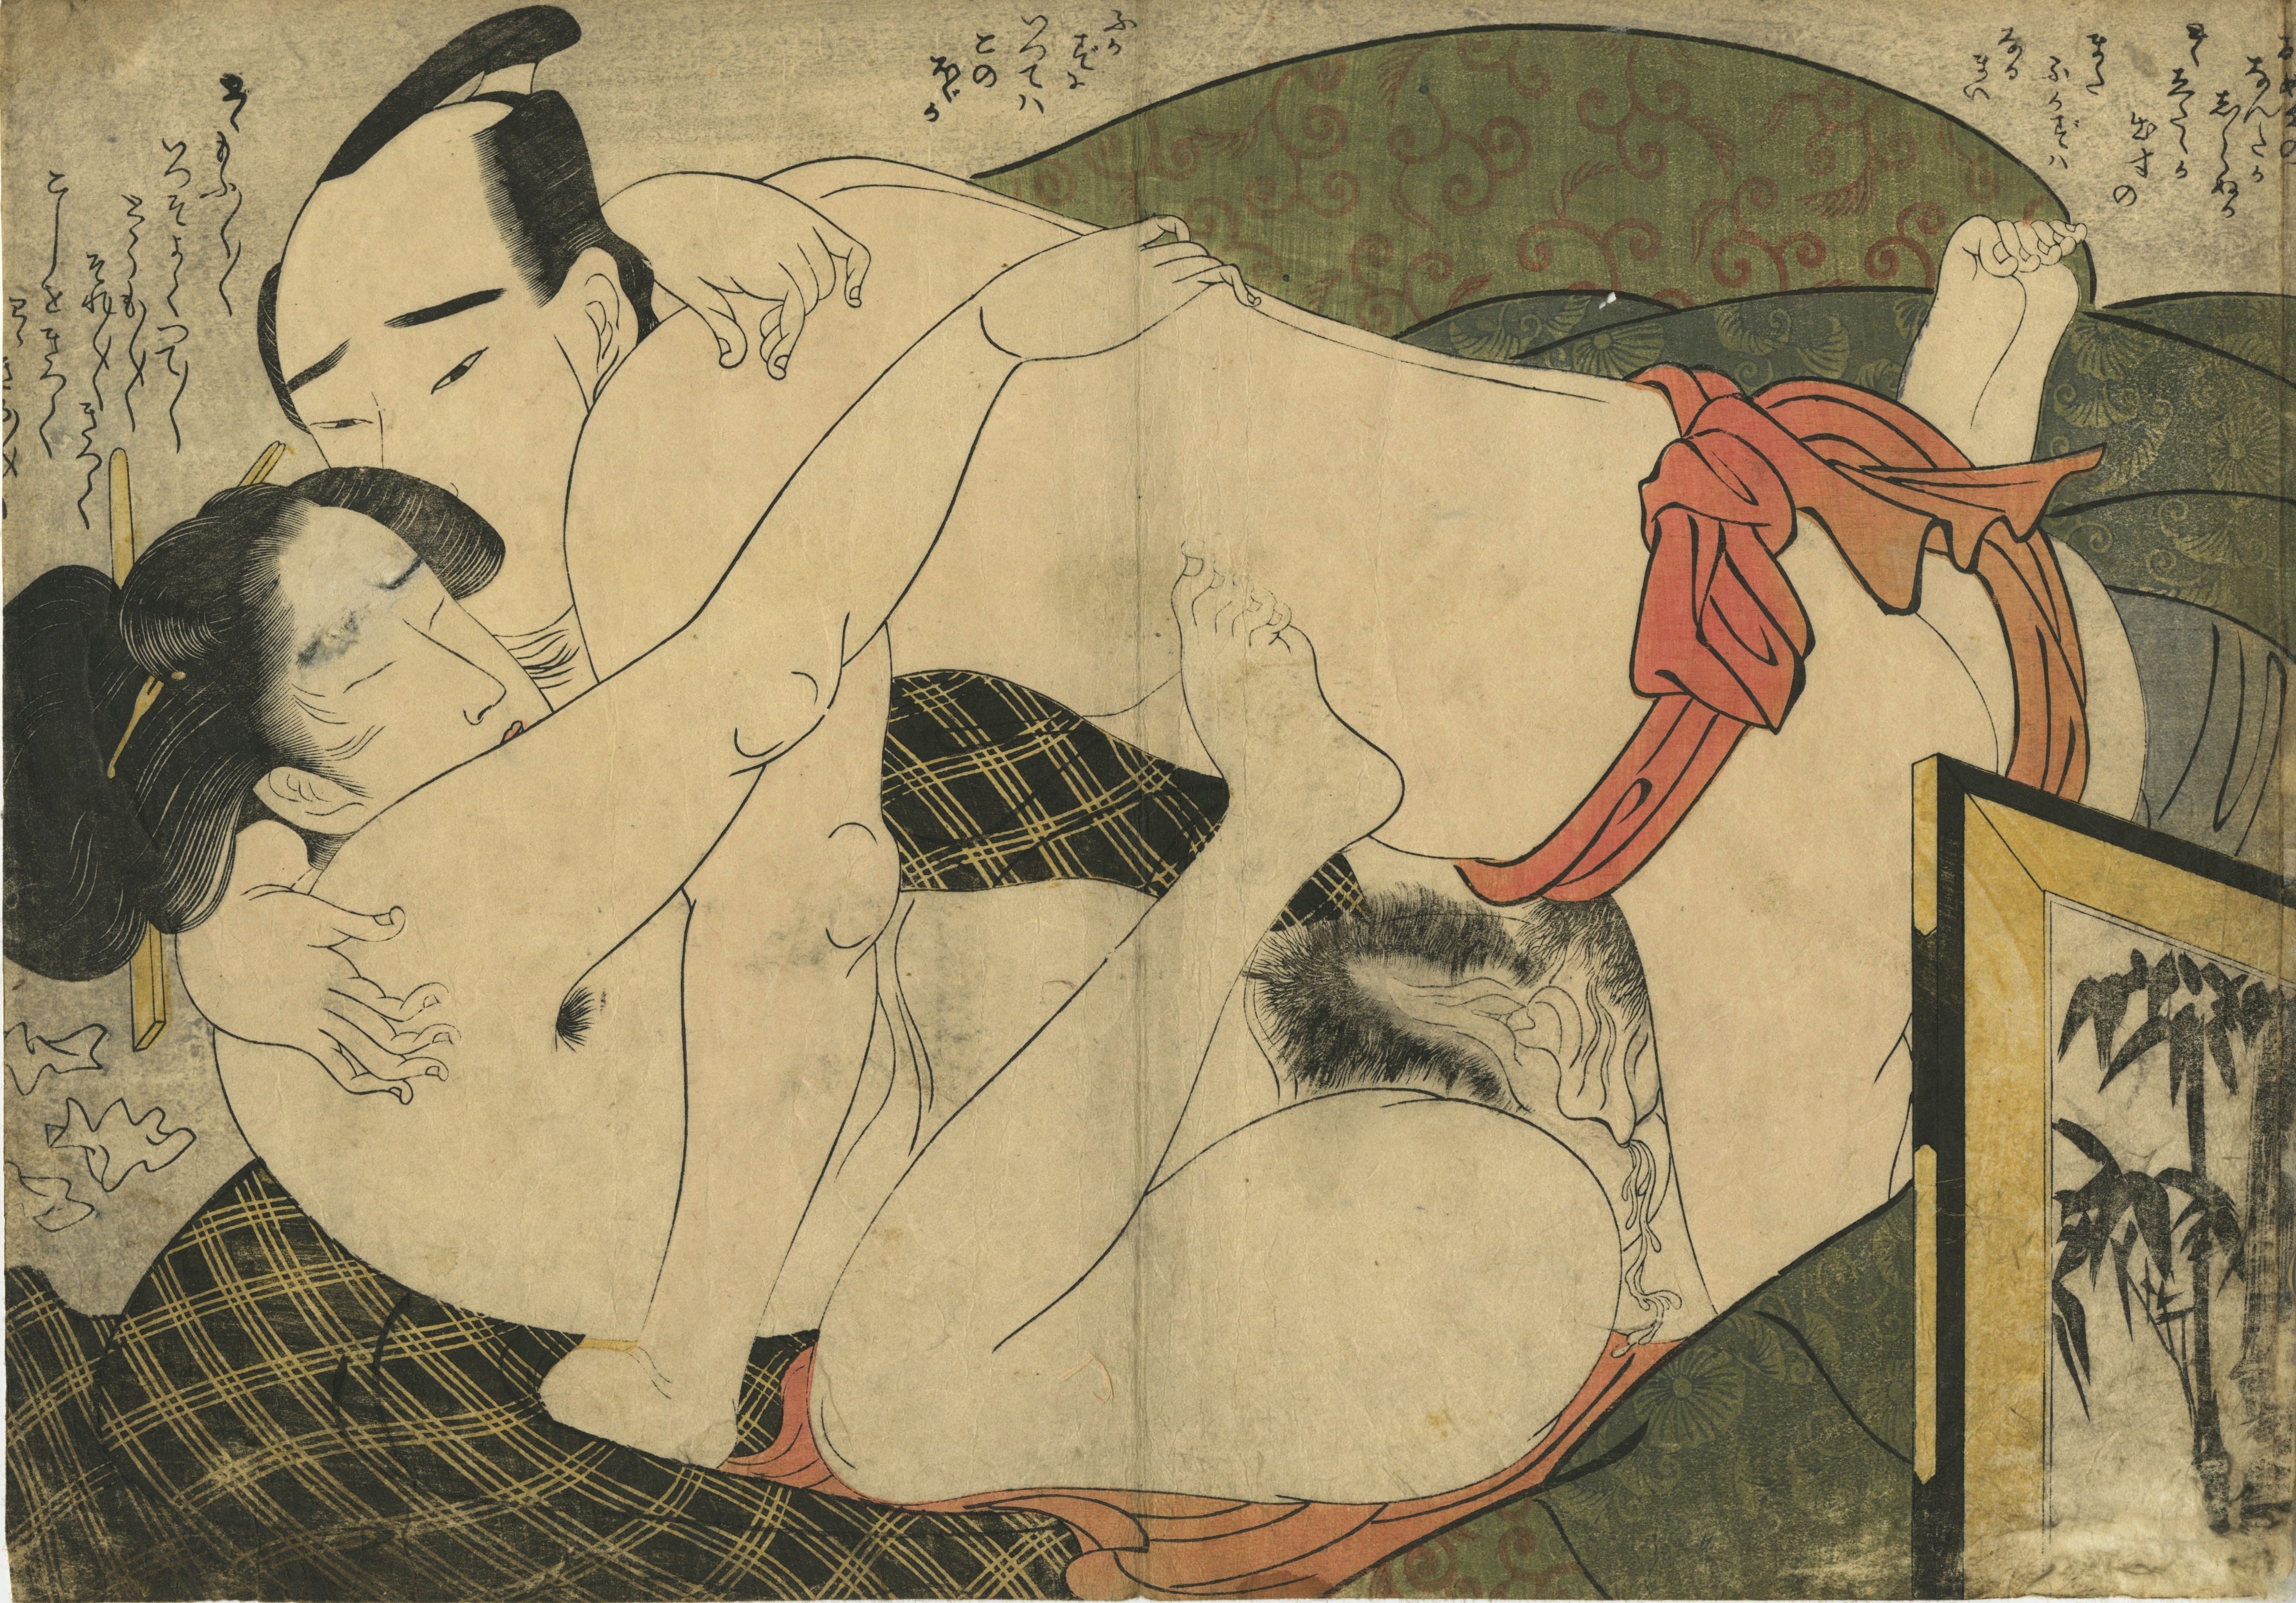 эротика в японской графике фото 119